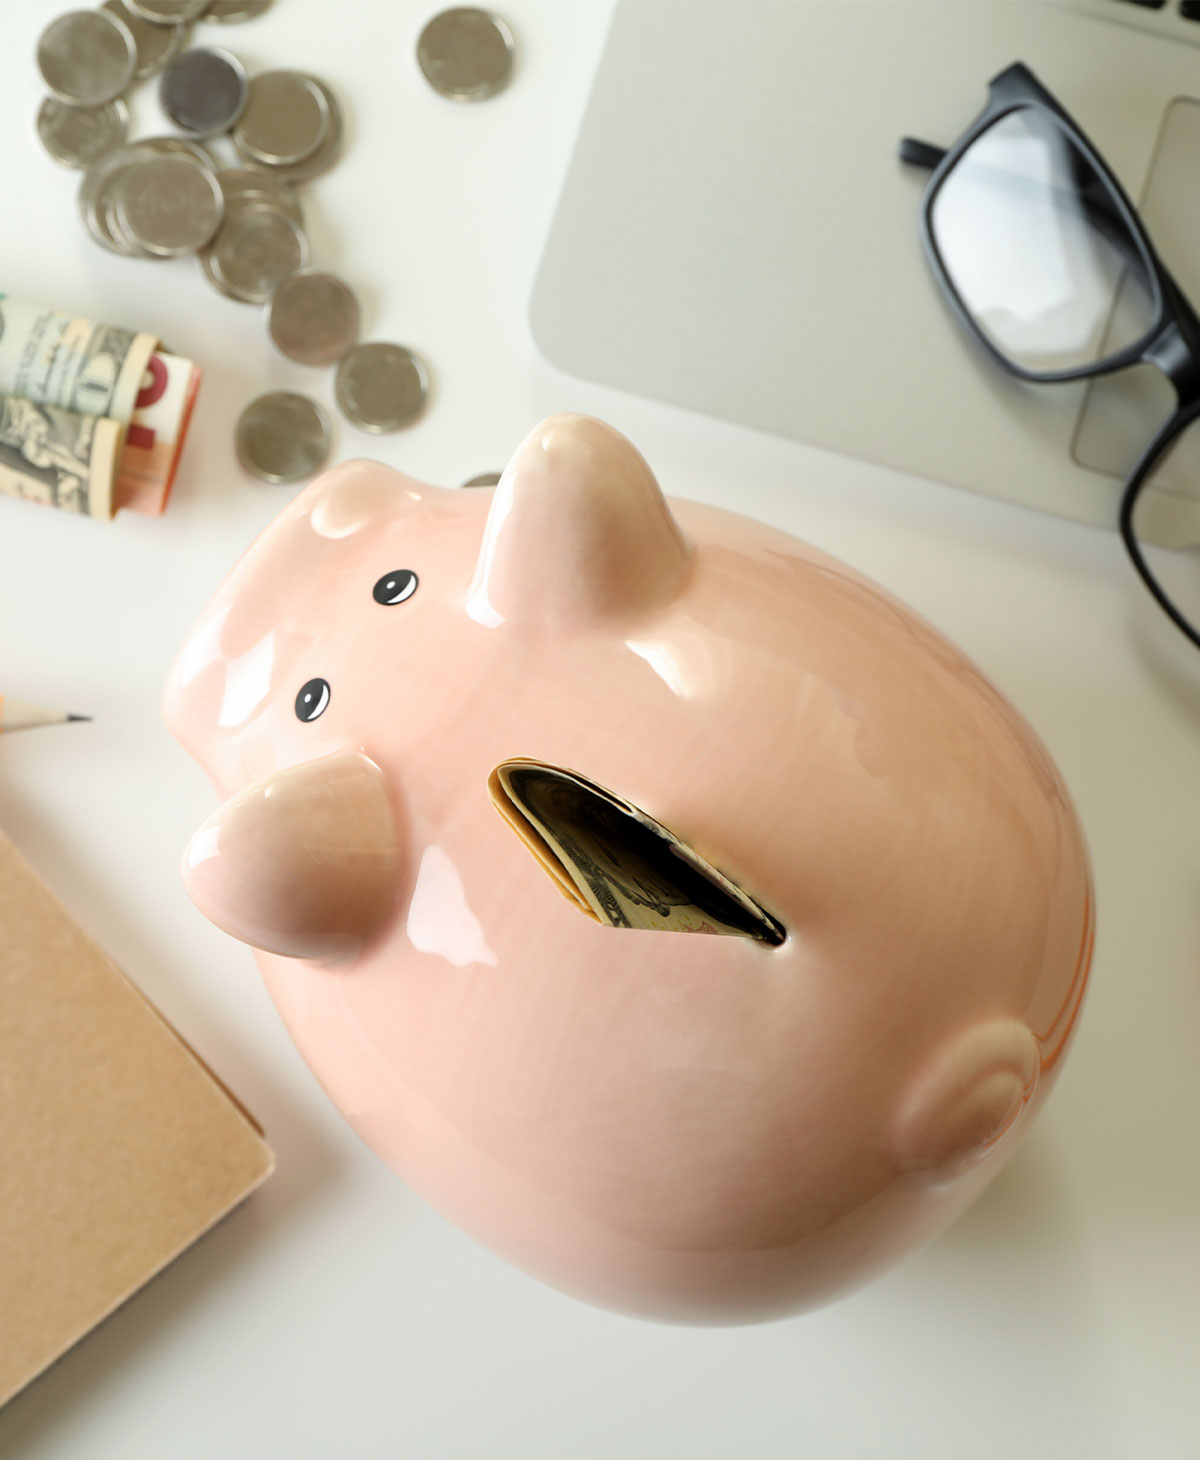 piggie bank safe options for retirement